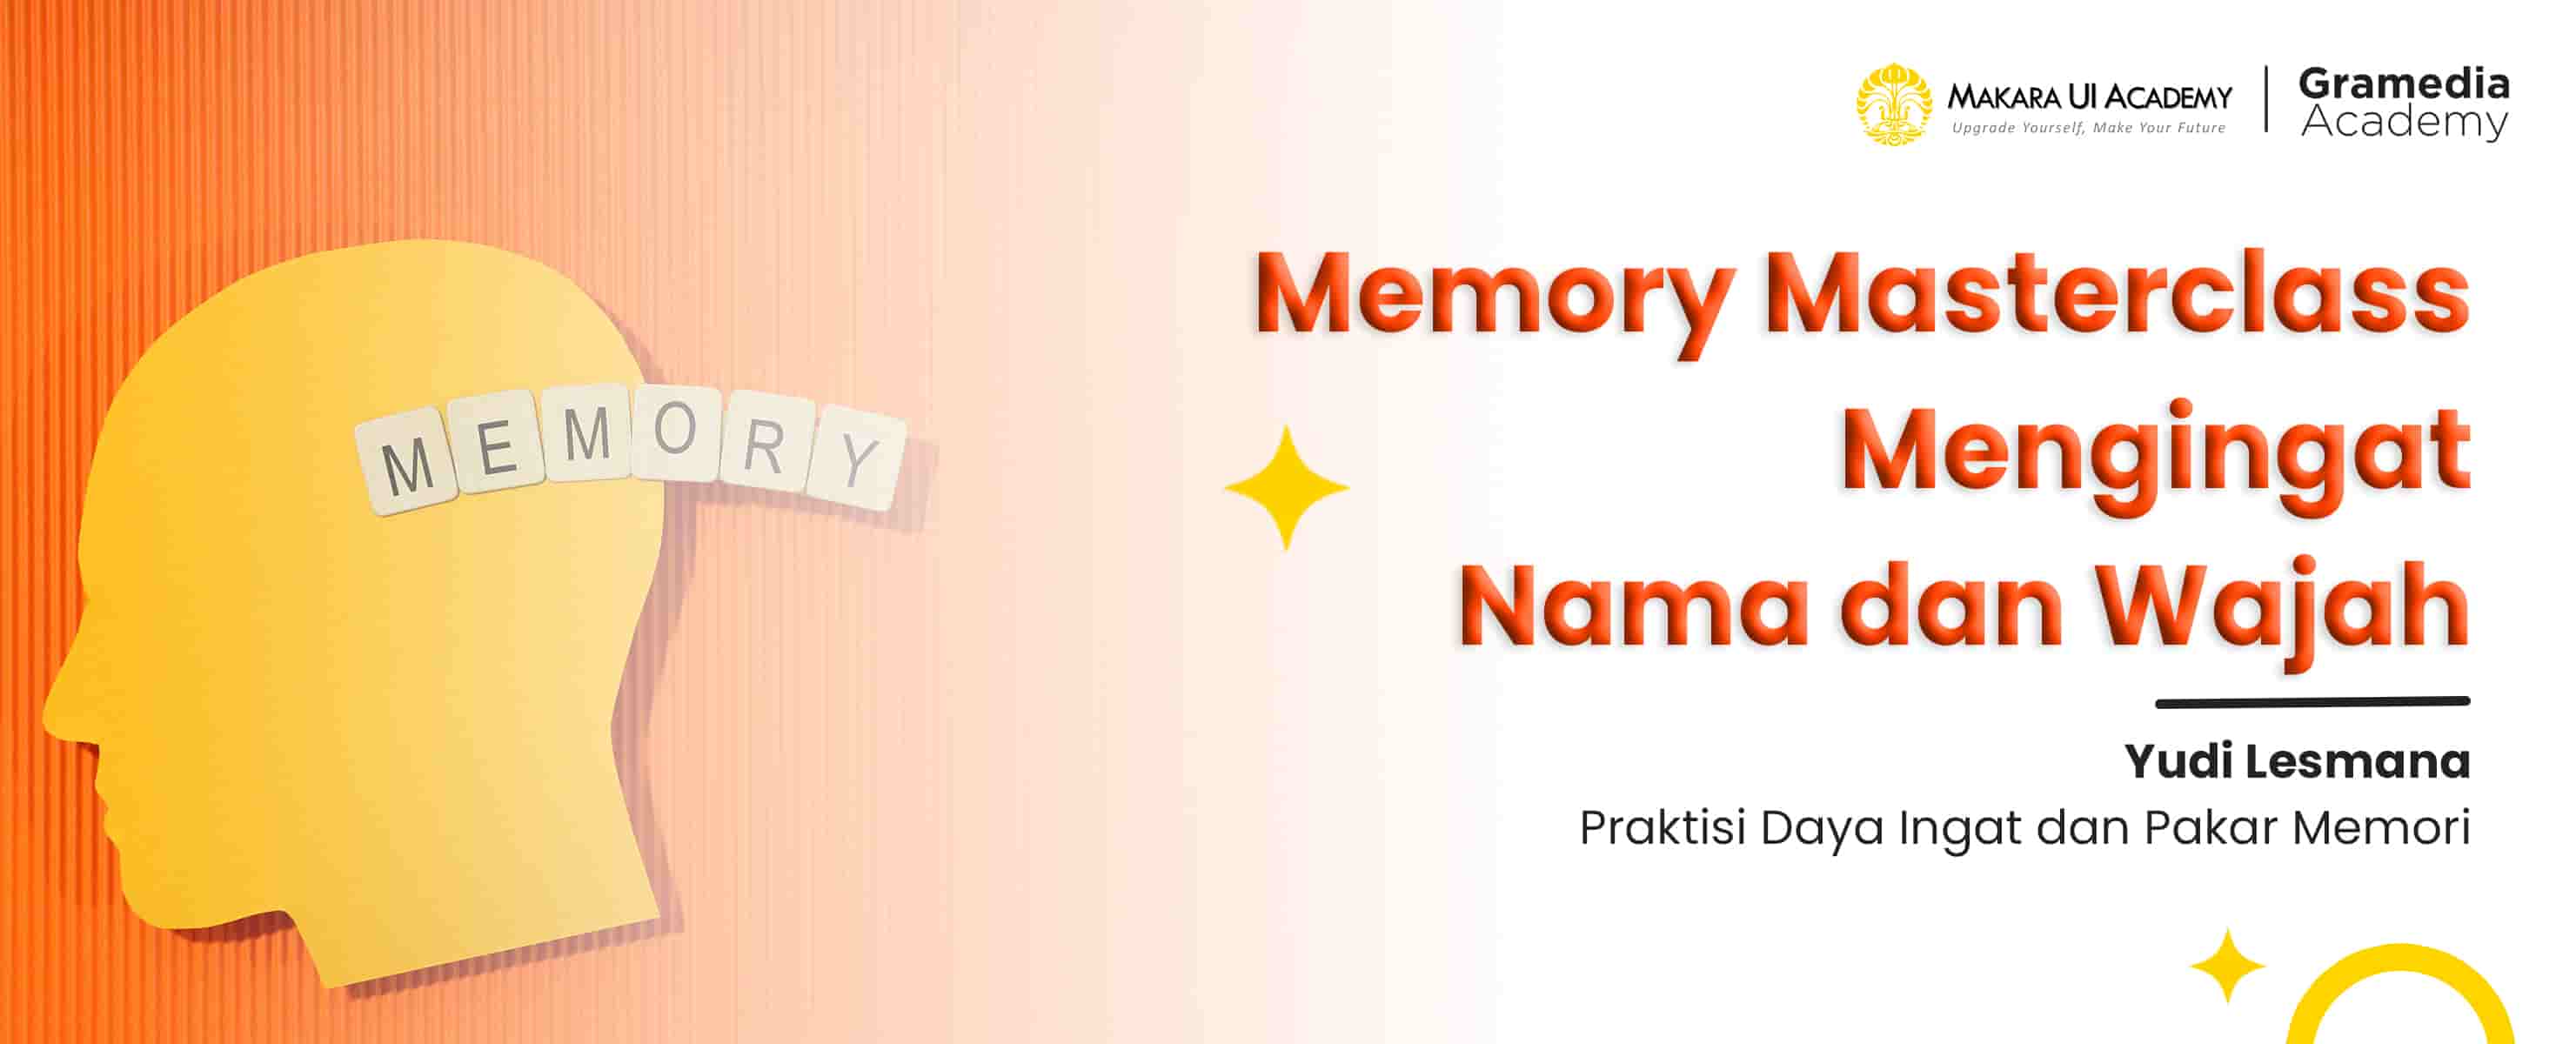 Memory Masterclass Mengingat Nama dan Wajah